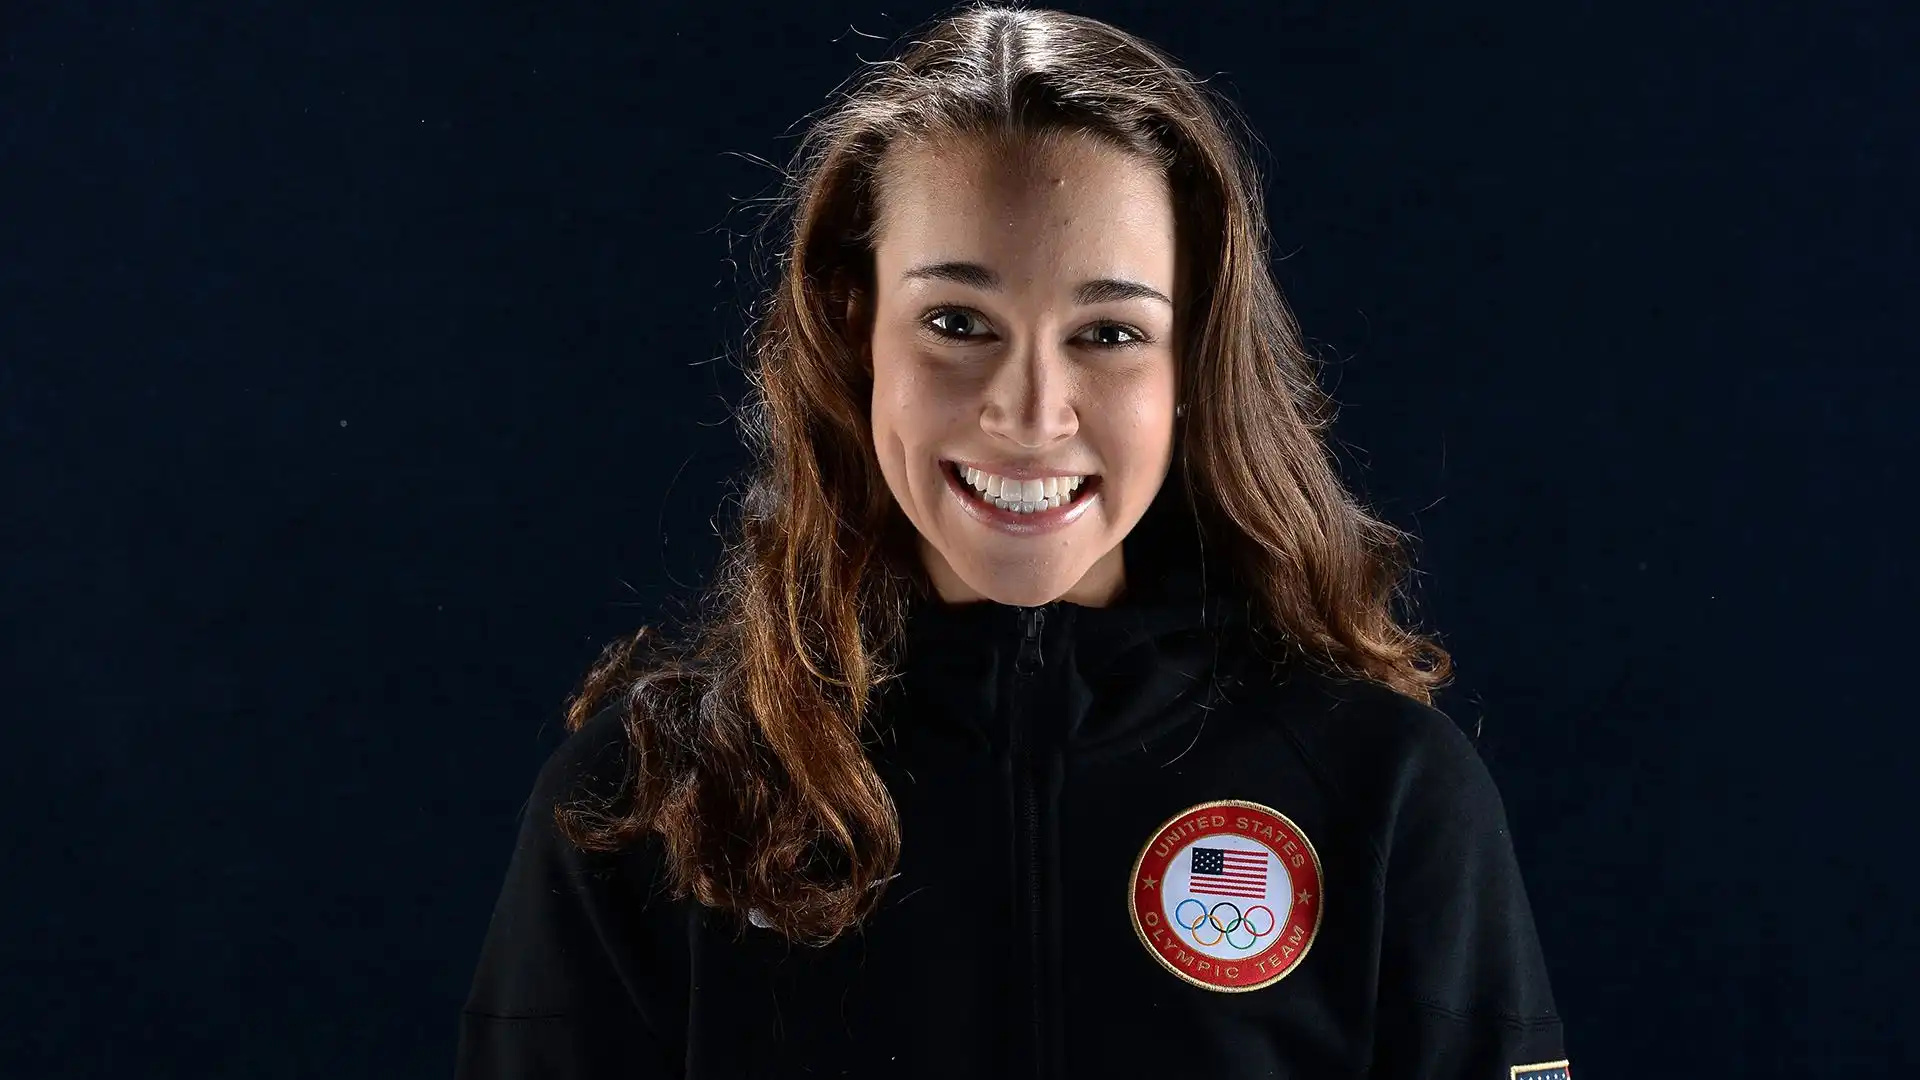 Sarah ha vinto la prima edizione della Coppa del Mondo di salto con gli sci femminile nel 2012.